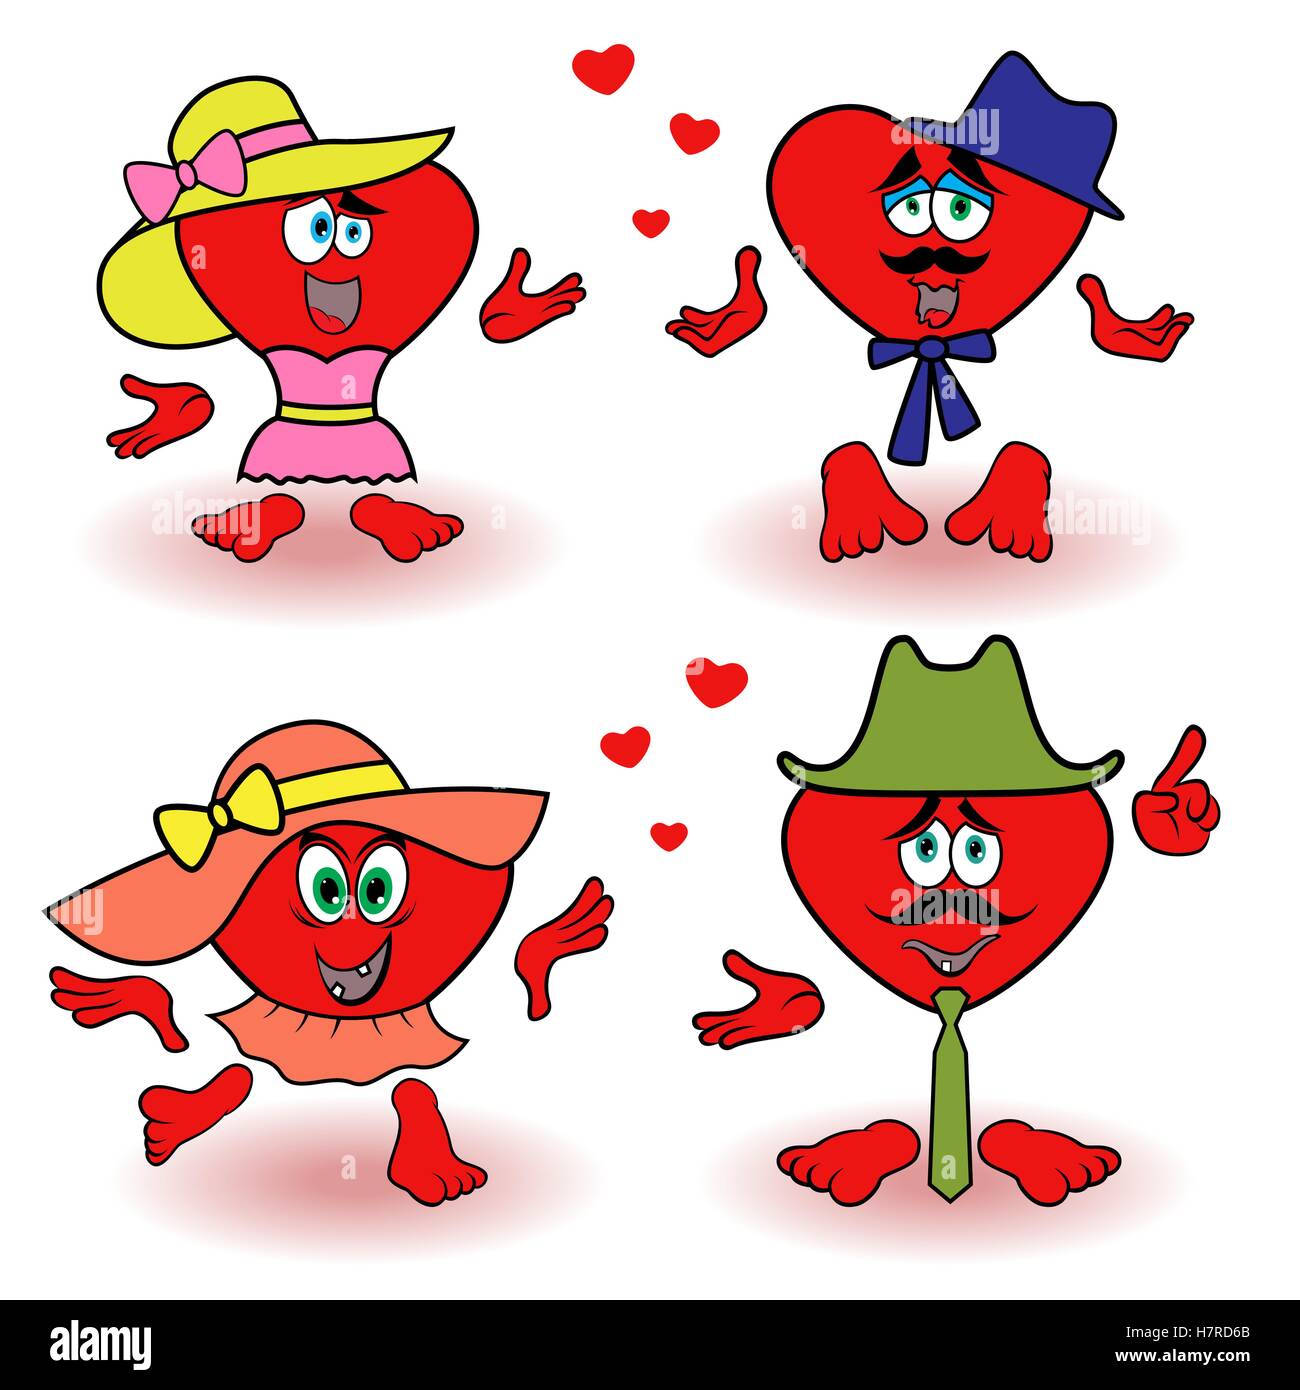 Amüsant, zwei paar rote Herzen zu lieben, Valentine Cartoon Vektor-Illustrationen isoliert auf weißem Hintergrund Stock Vektor